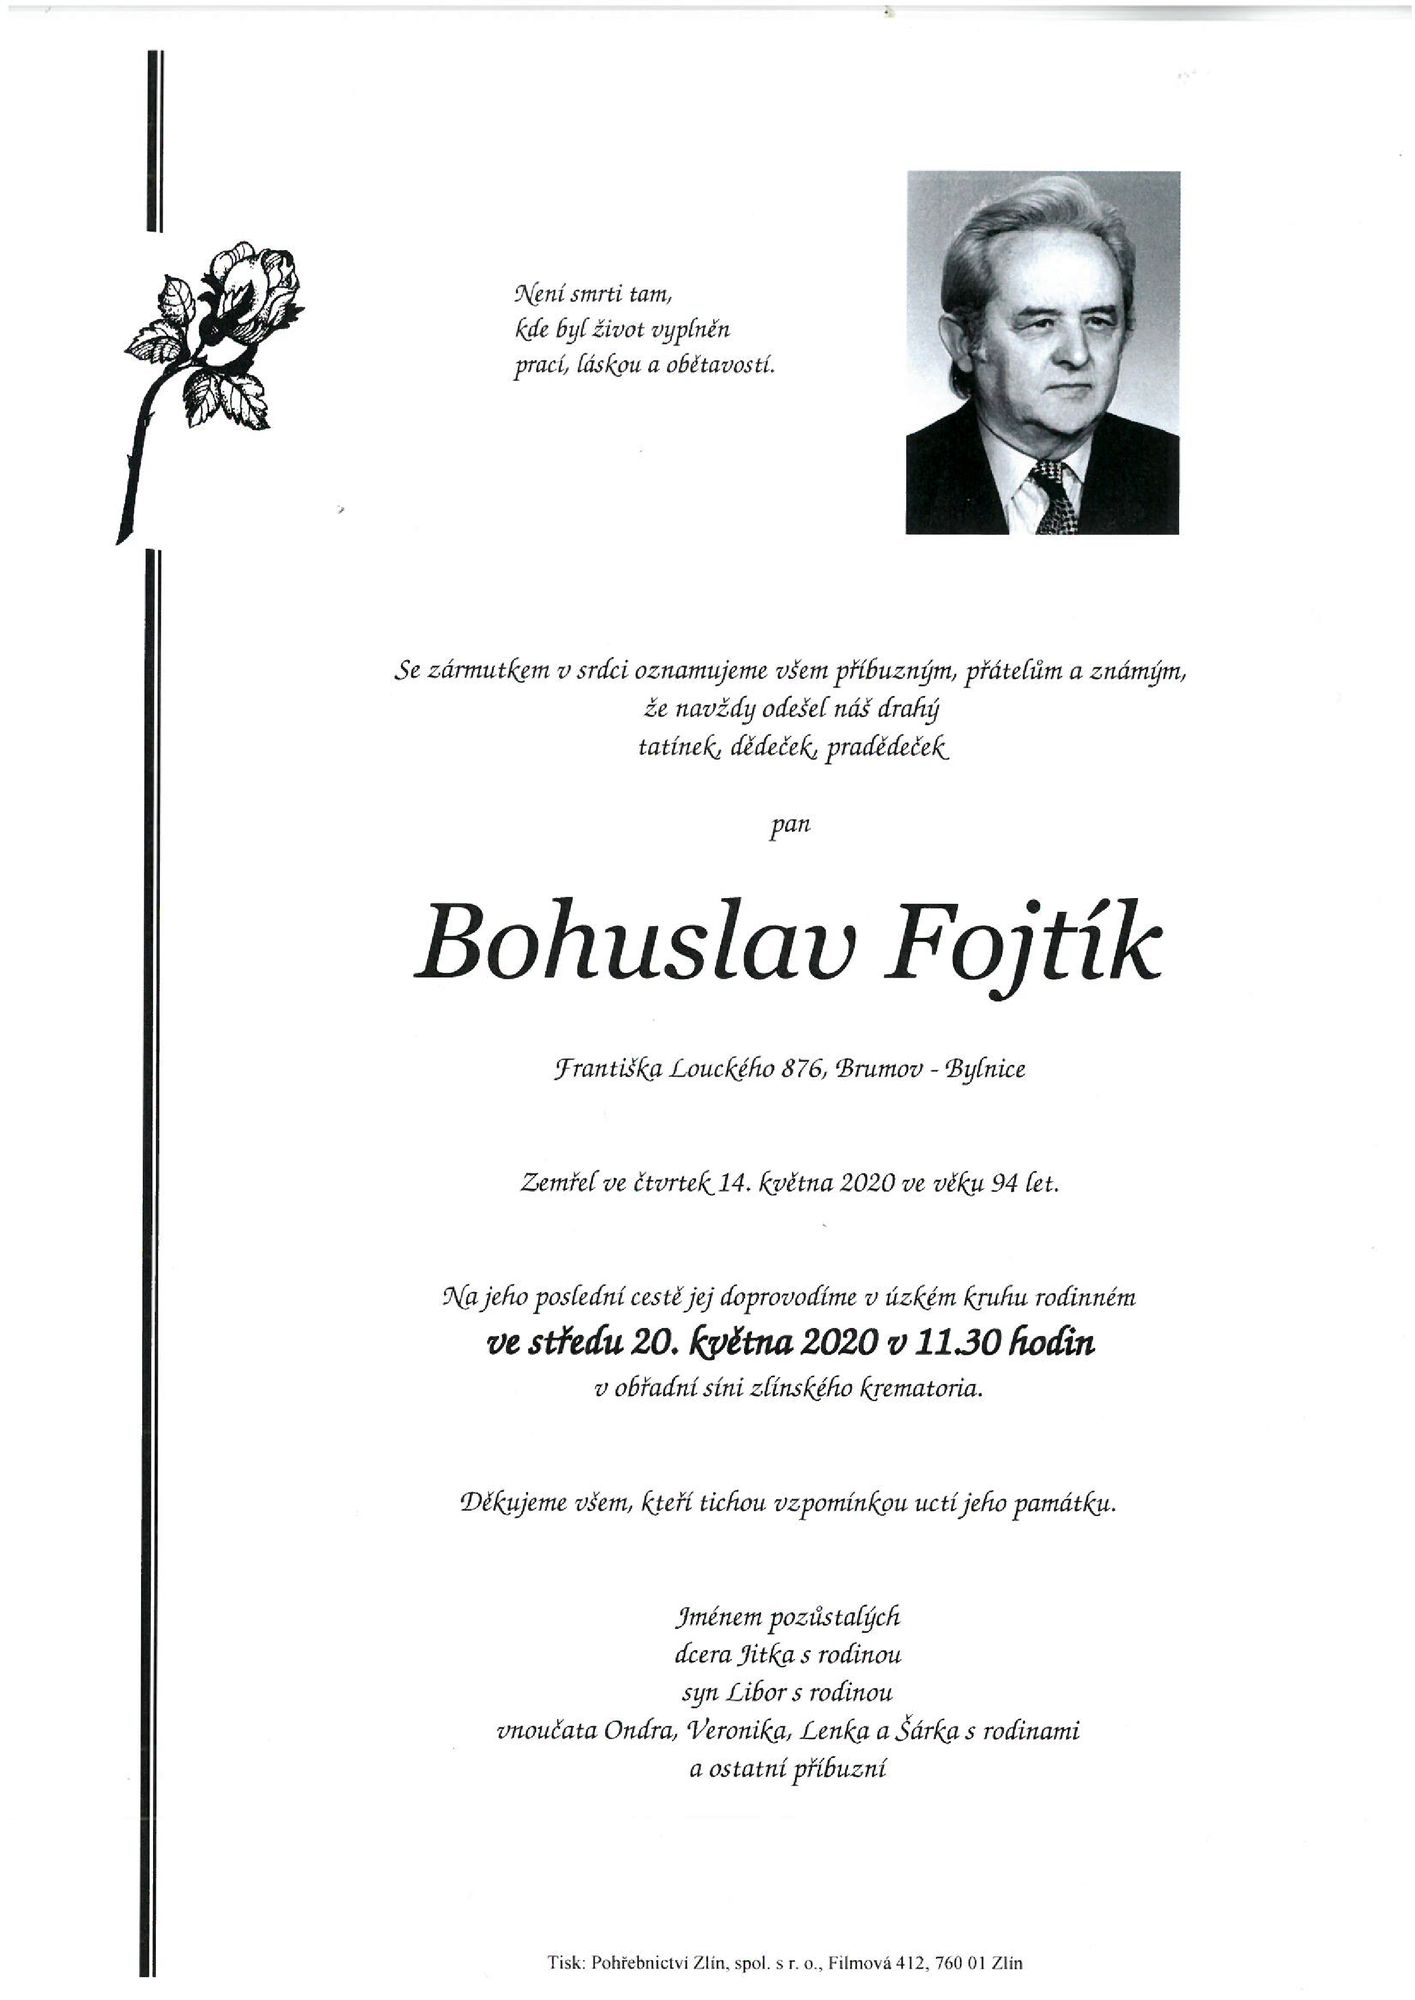 Bohuslav Fojtík